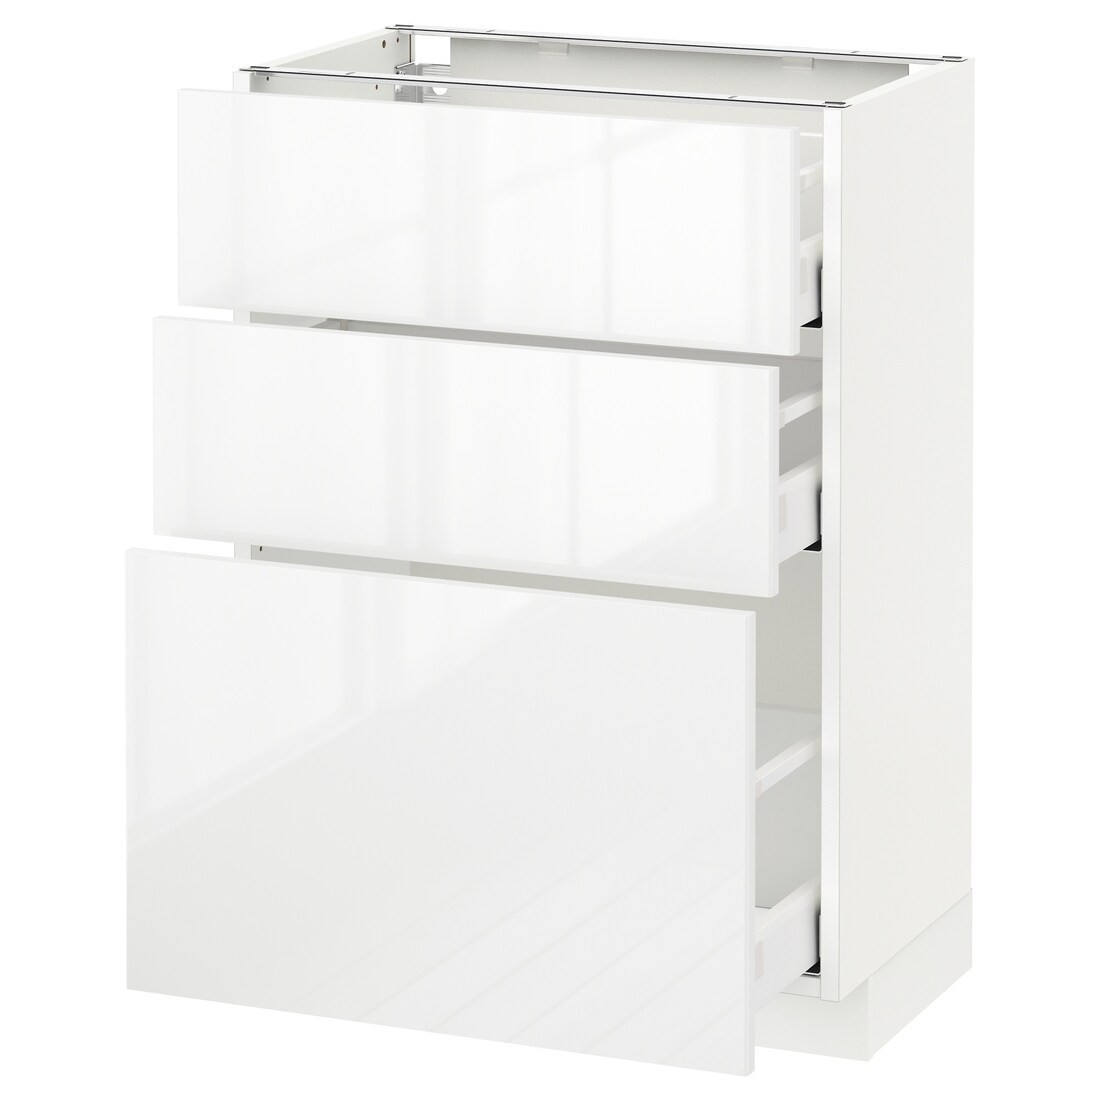 IKEA METOD МЕТОД / MAXIMERA МАКСИМЕРА Напольный шкаф с 3 ящиками, белый / Ringhult белый, 60x37 см 29052164 290.521.64